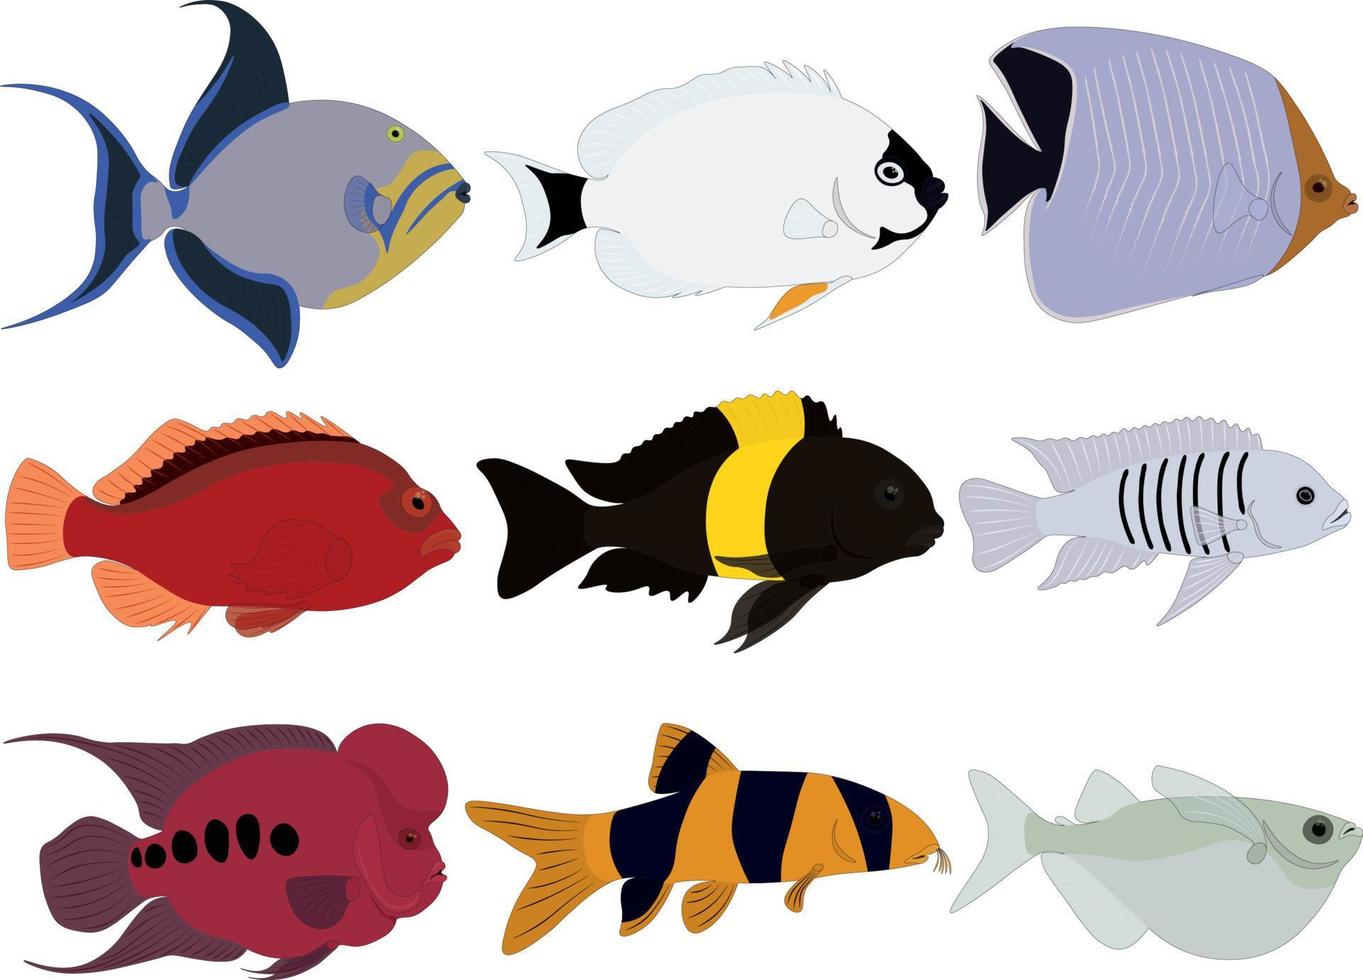 Tropical exotic marine aquarium fish collection vector illustration